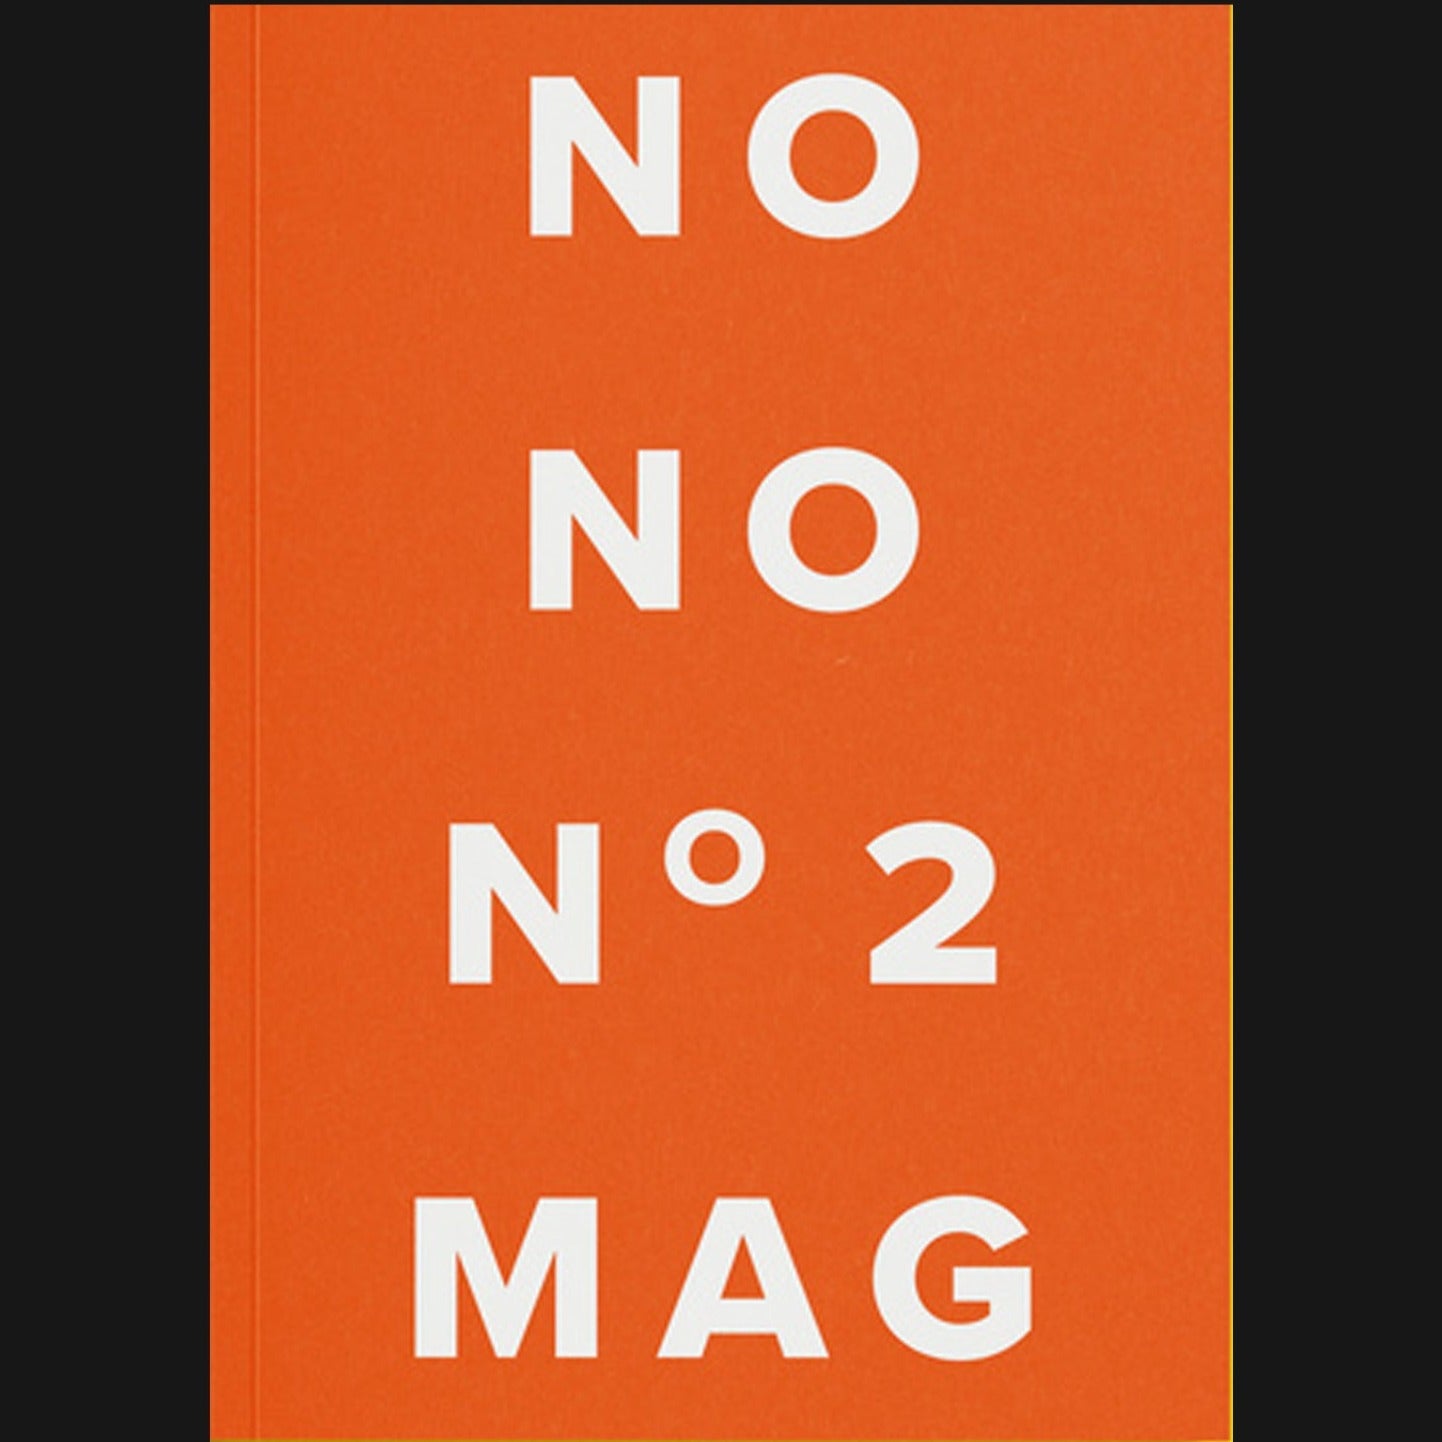 NO MORE POETRY - "NO NO NO MAG: ISSUE TWO" MAGAZINE